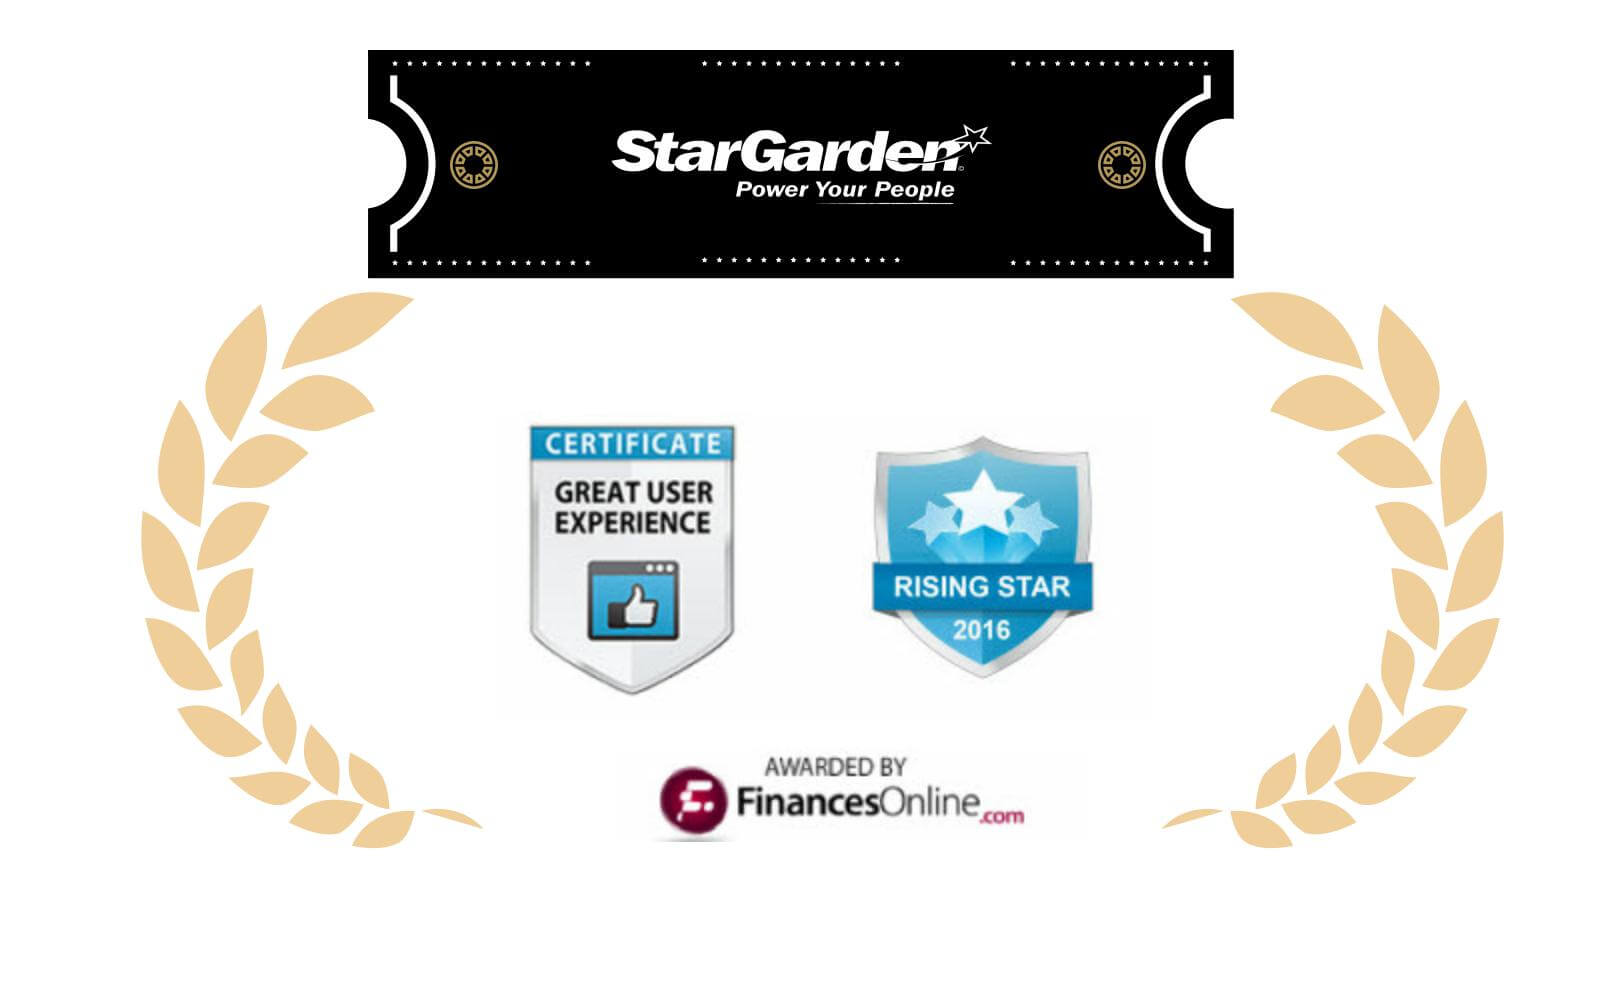 StarGarden HCM wins award from Finances online reviewers